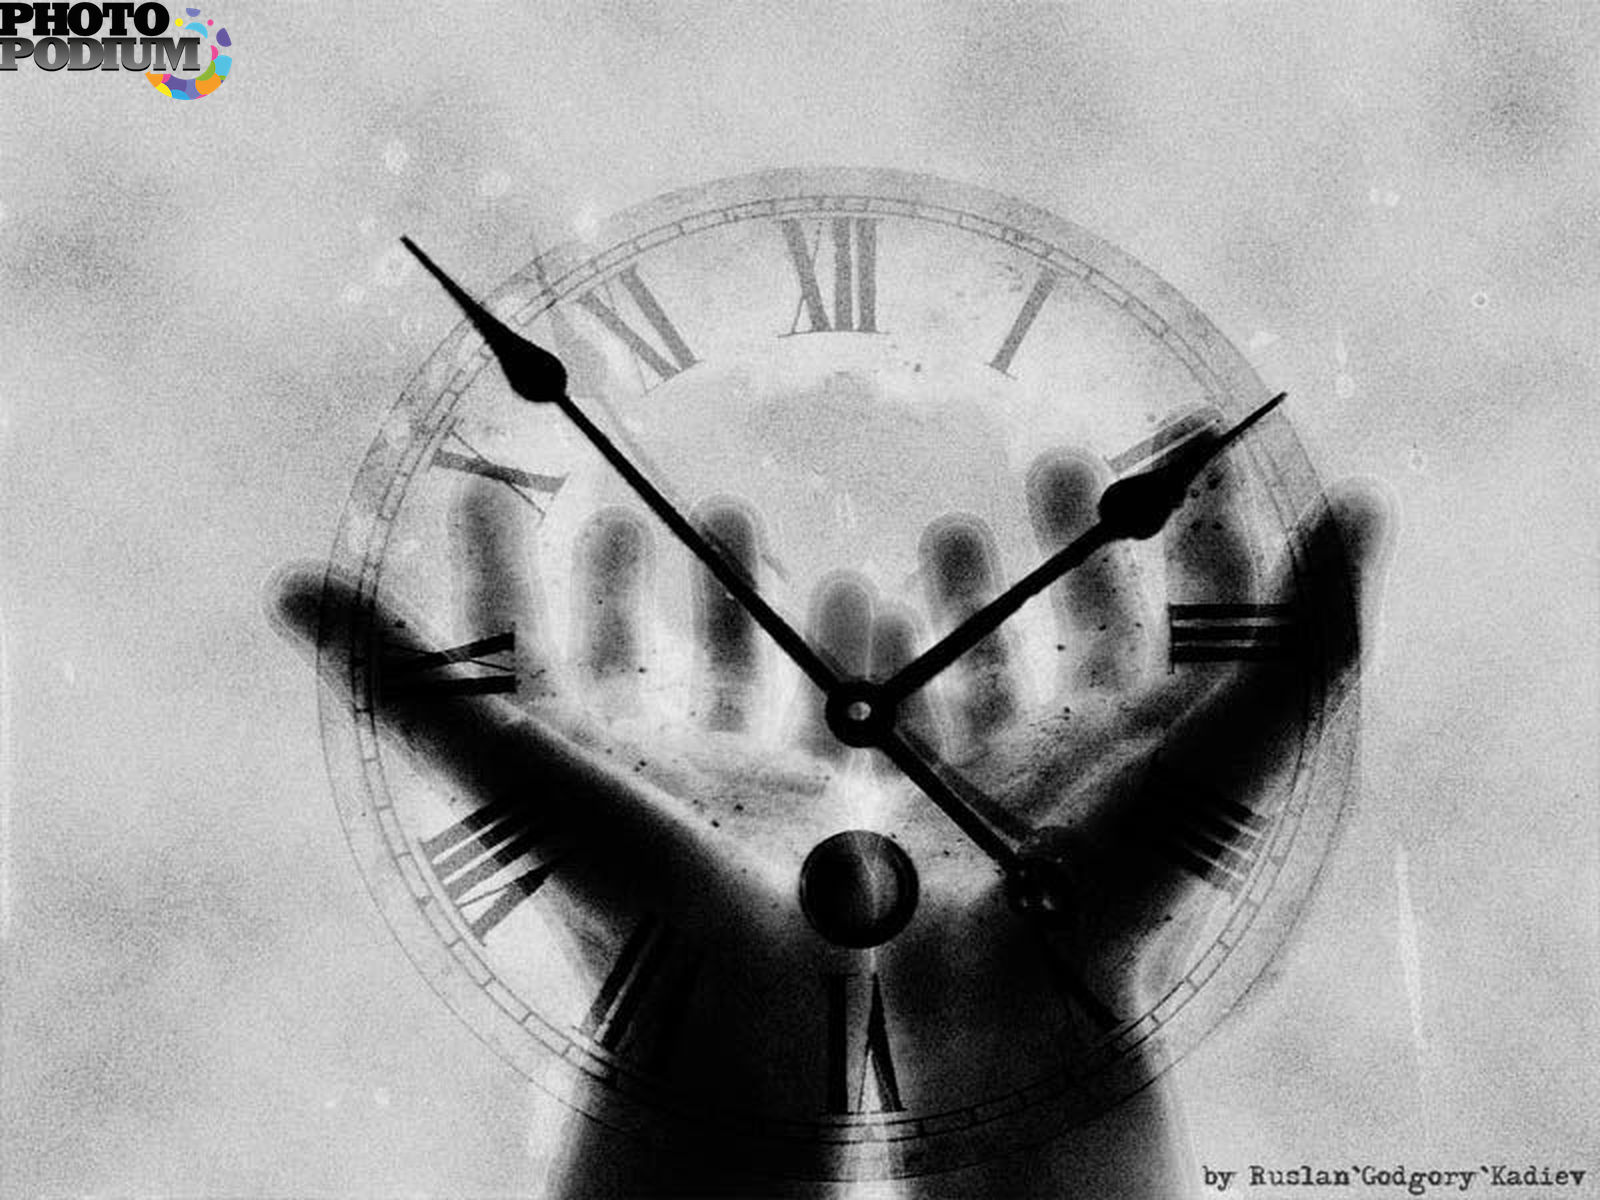 Три минуты жизни. Иллюстрации с часами. Часы аватарка. Сломанные часы. Психологические картины со смыслом.